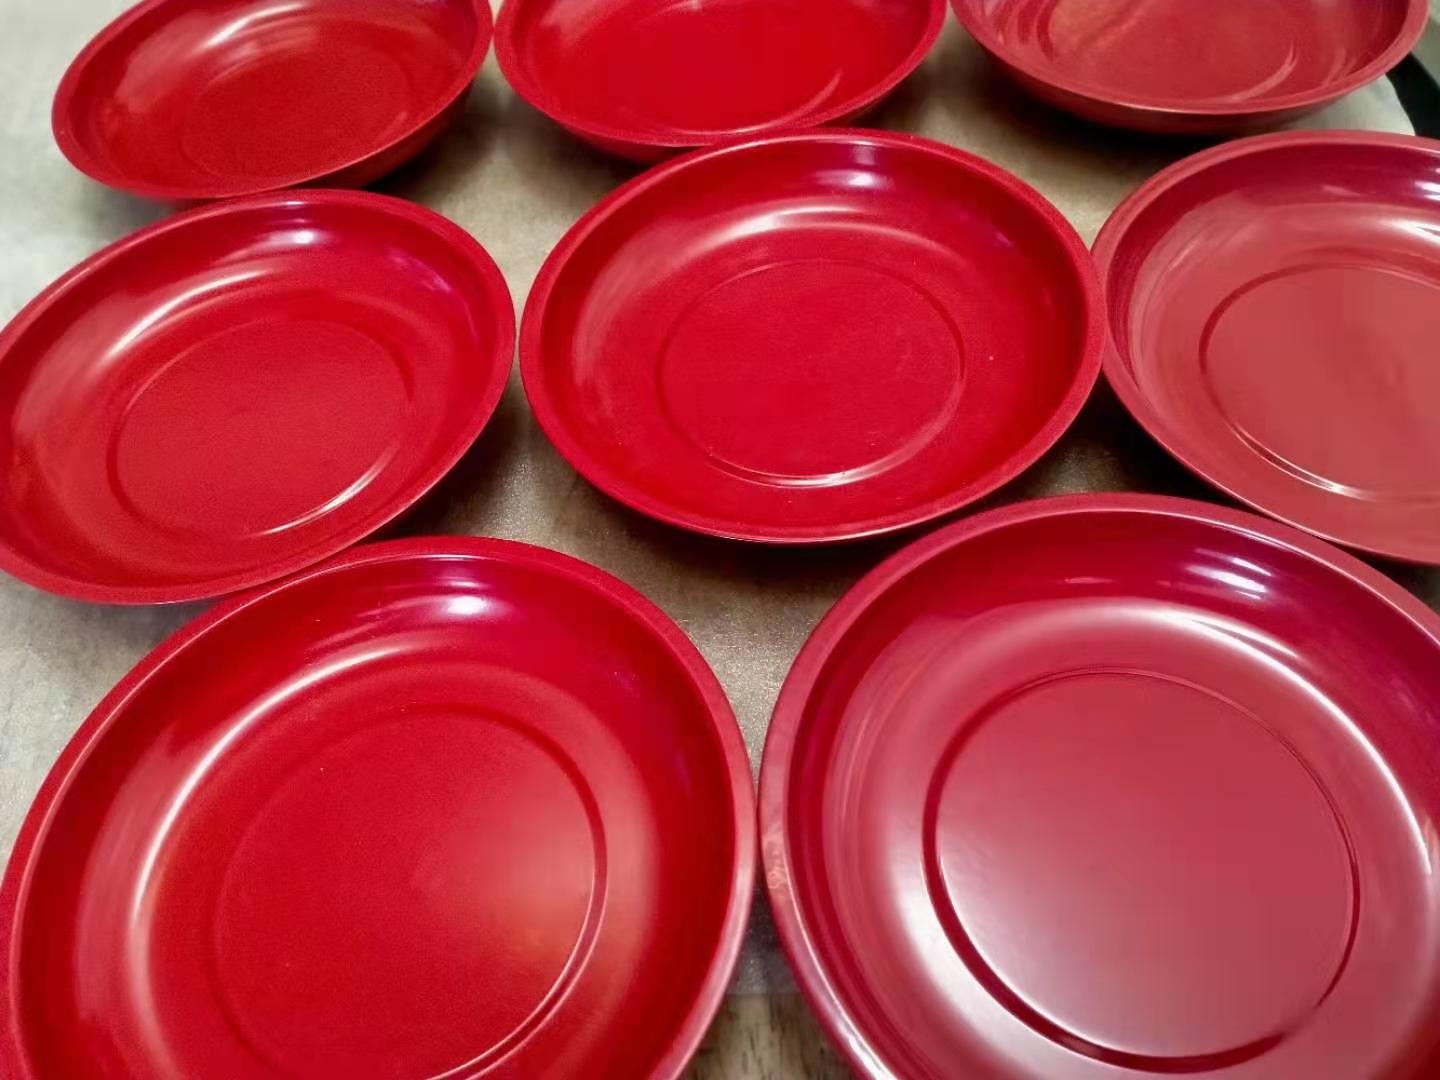 红色喷塑磁性收纳碗 汽保机修磁力盘 底部装配磁铁 网上热销磁碗 可以牢牢吸附在铁制品上在倒挂状态磁碗和小零件都不会滑落8